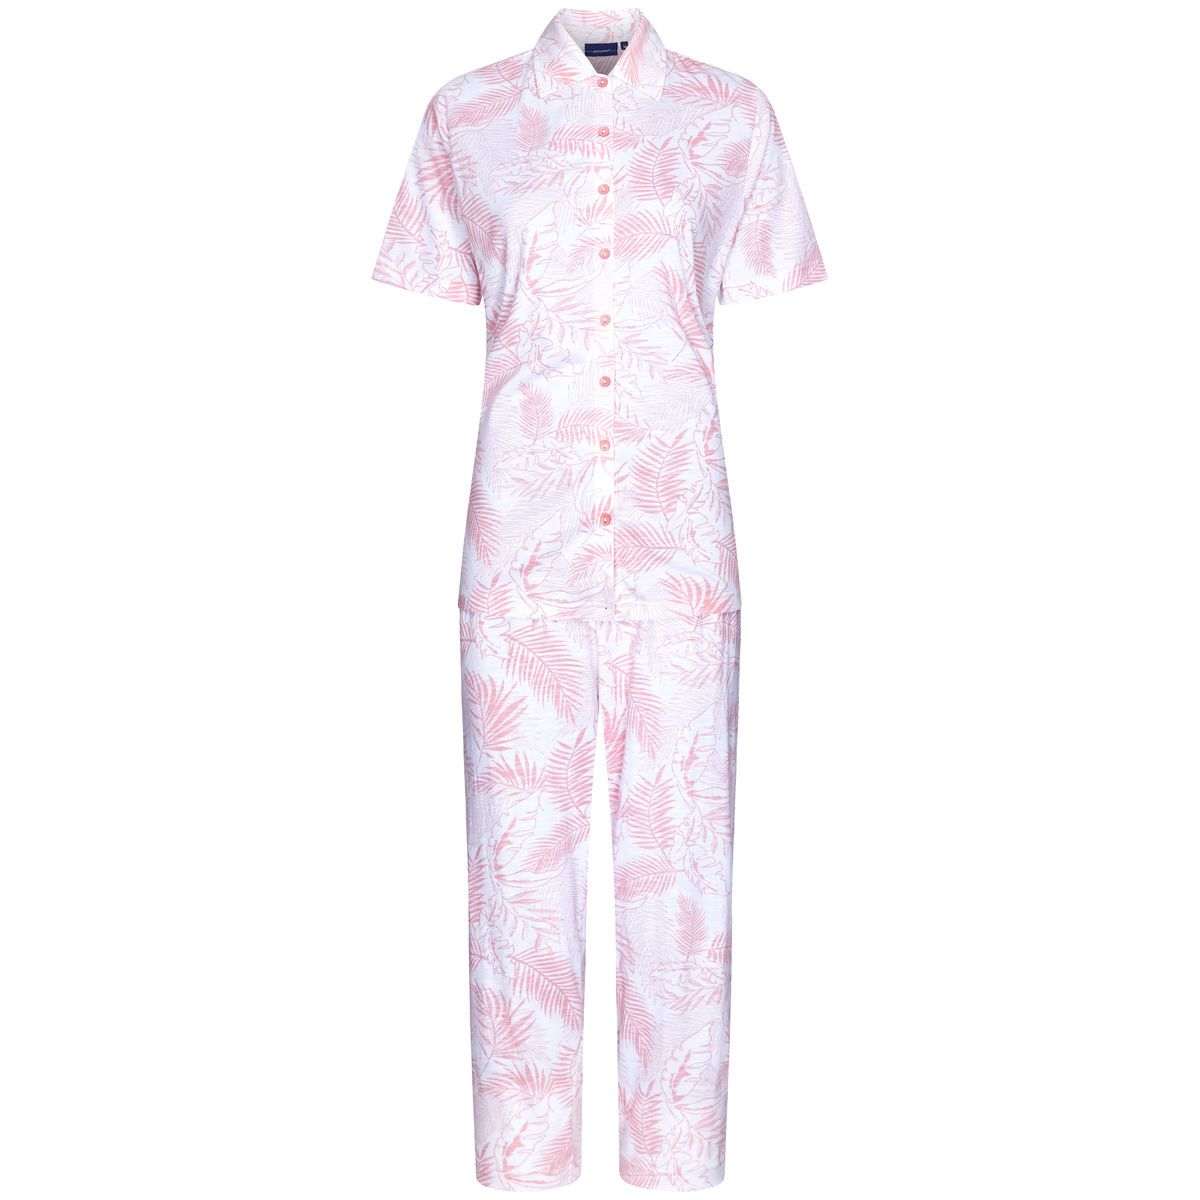 Pastunette doorknoop pyjama met kraag - 20241-150-6 - lichtroze